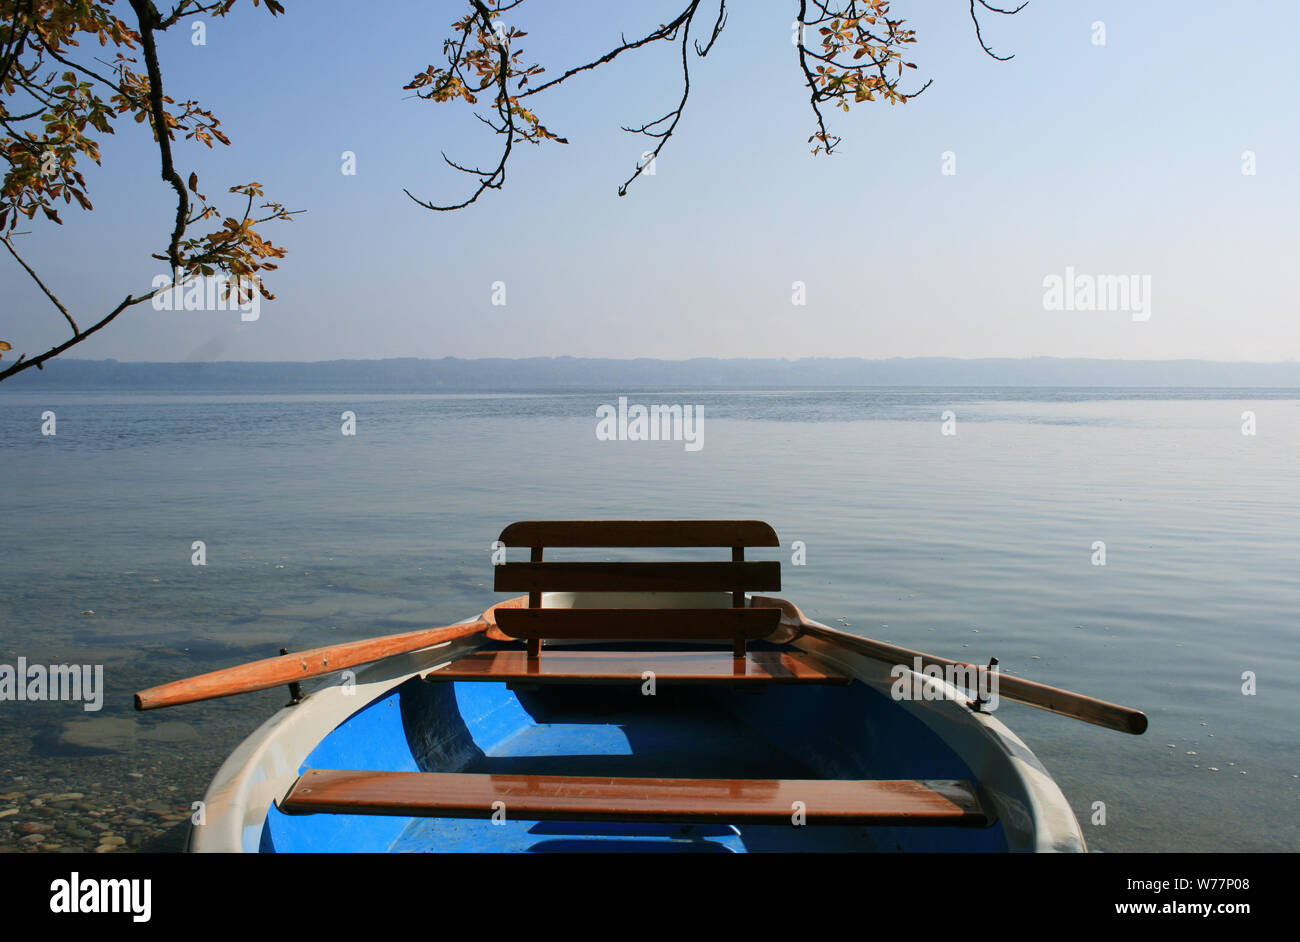 Ausschnitt eines Paddelbootes im Vordergrund, im Hintergrund ruhiger See Stock Photo